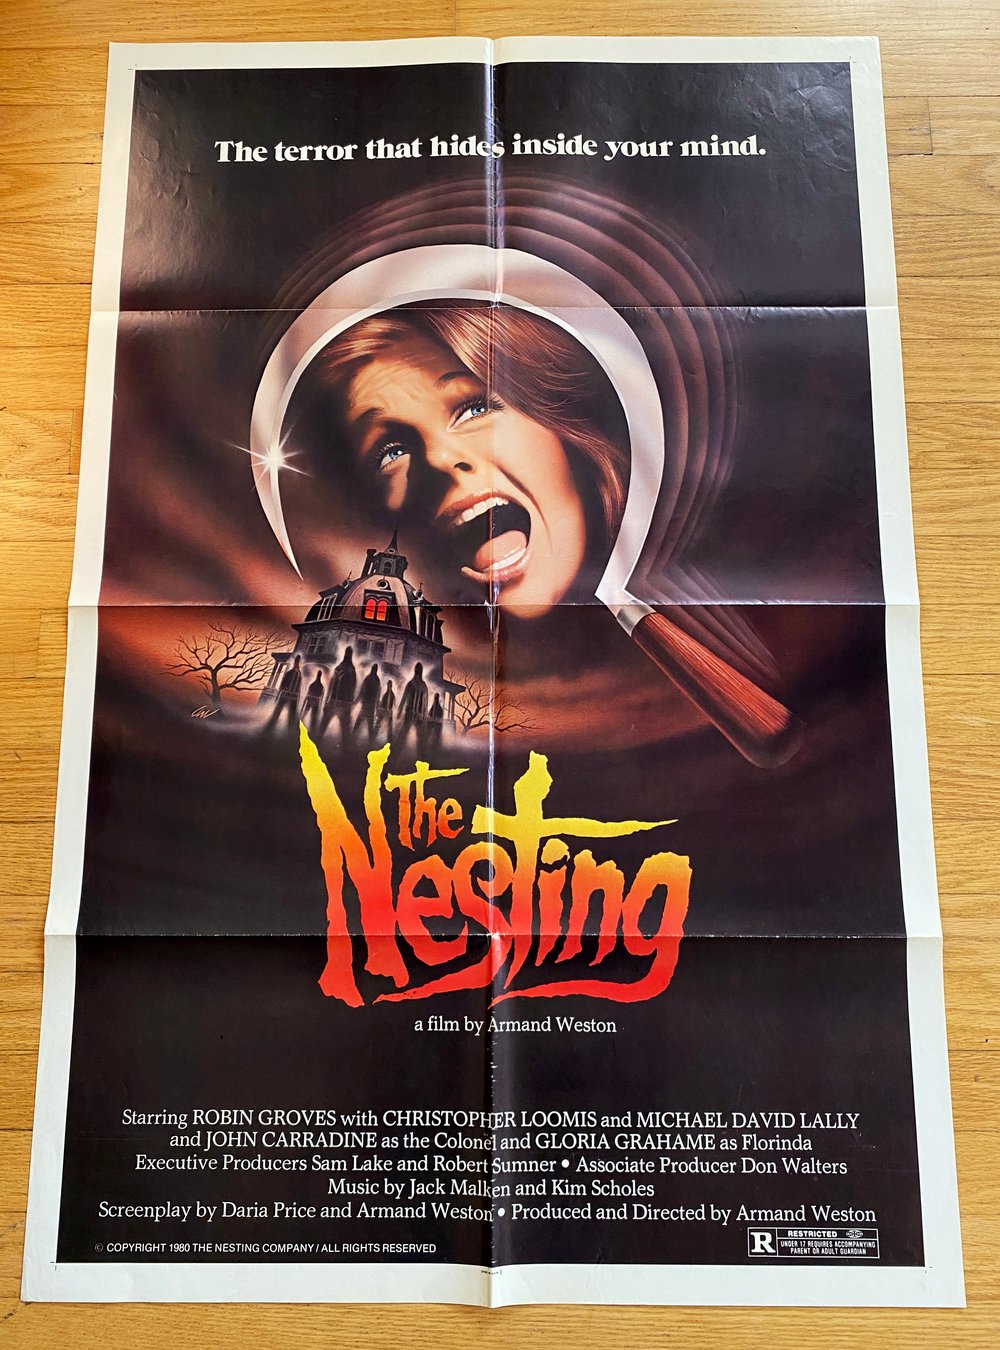 1981 THE NESTING Original U.S. One Sheet Movie Poster